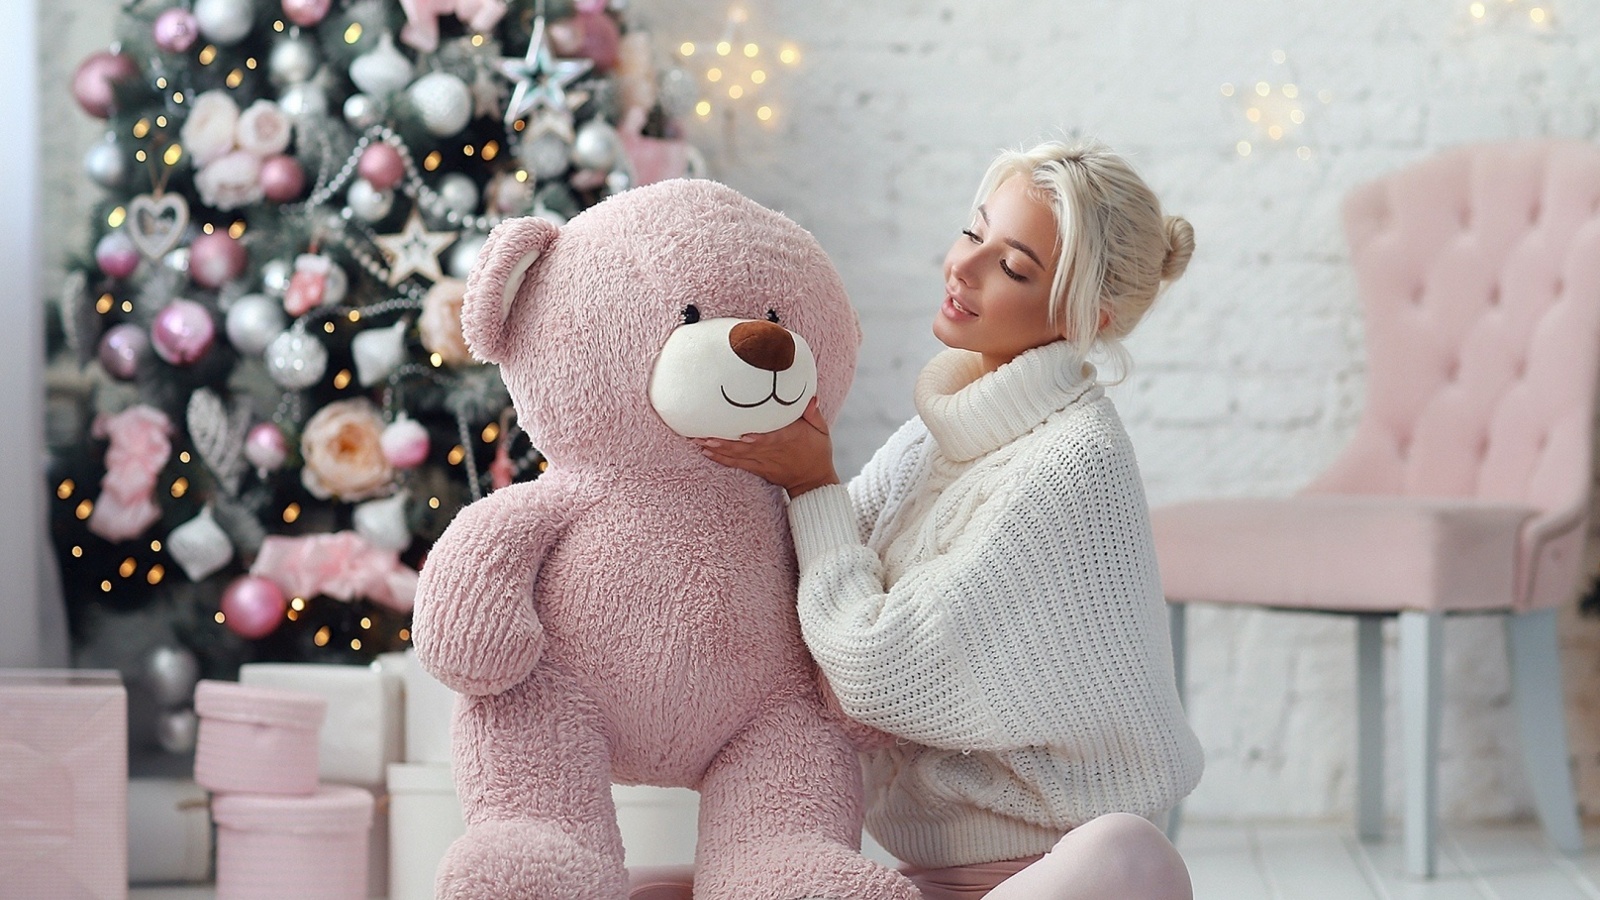 Обои Christmas photo session with bear 1600x900